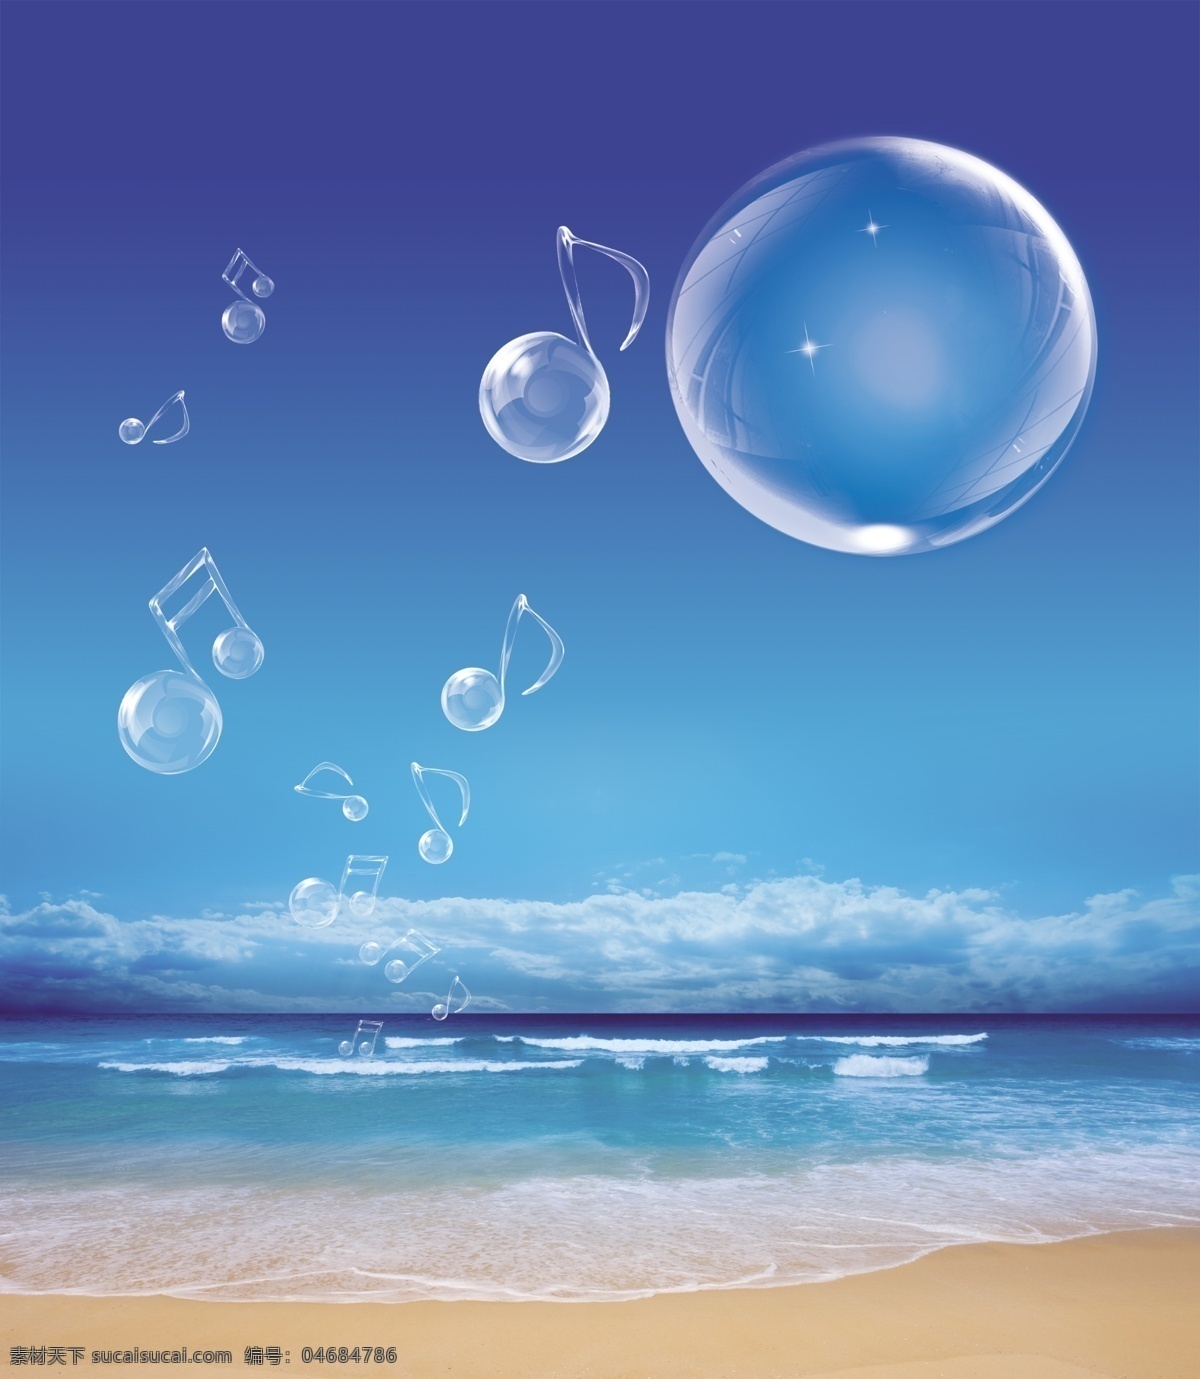 分层 psd分层图 psd源文件 白云 大海 大自然 海滩 海洋 模板下载 蓝天 沙滩 音乐符号 水泡 气泡 素格 源文件